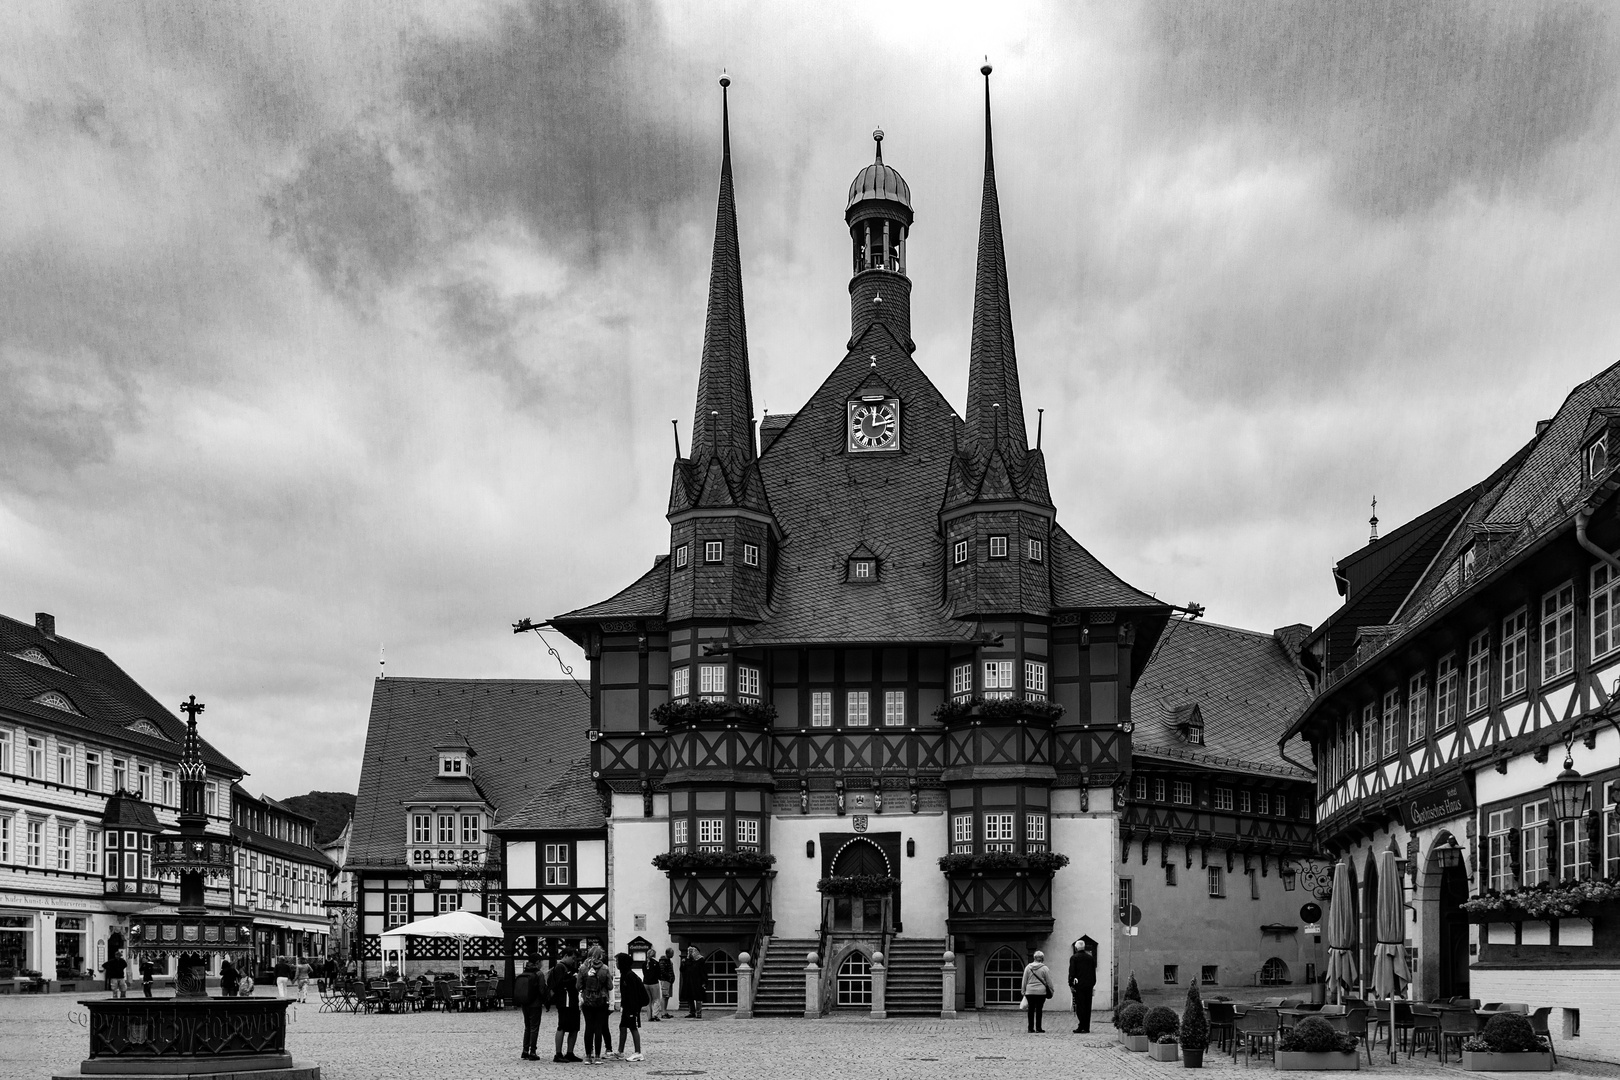 Wernigerode - Rathaus